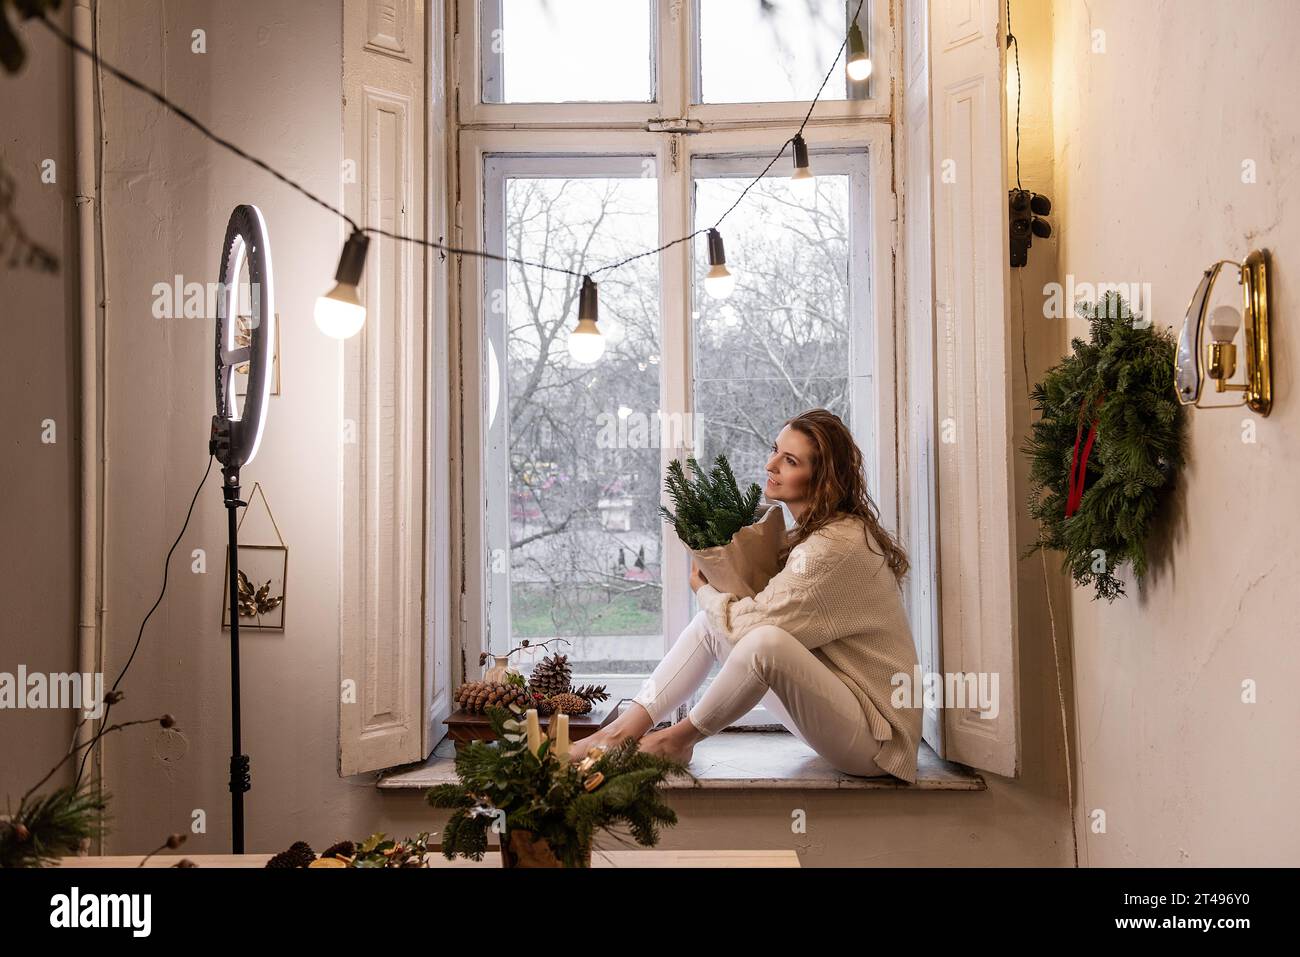 Jeune femme blogueuse est assise sur le rebord de la fenêtre près de la fenêtre, tient dans les mains bouquet de branches d'épinette verte dans du papier artisanal. Lampe LED à lumière annulaire, fleuriste fille Banque D'Images